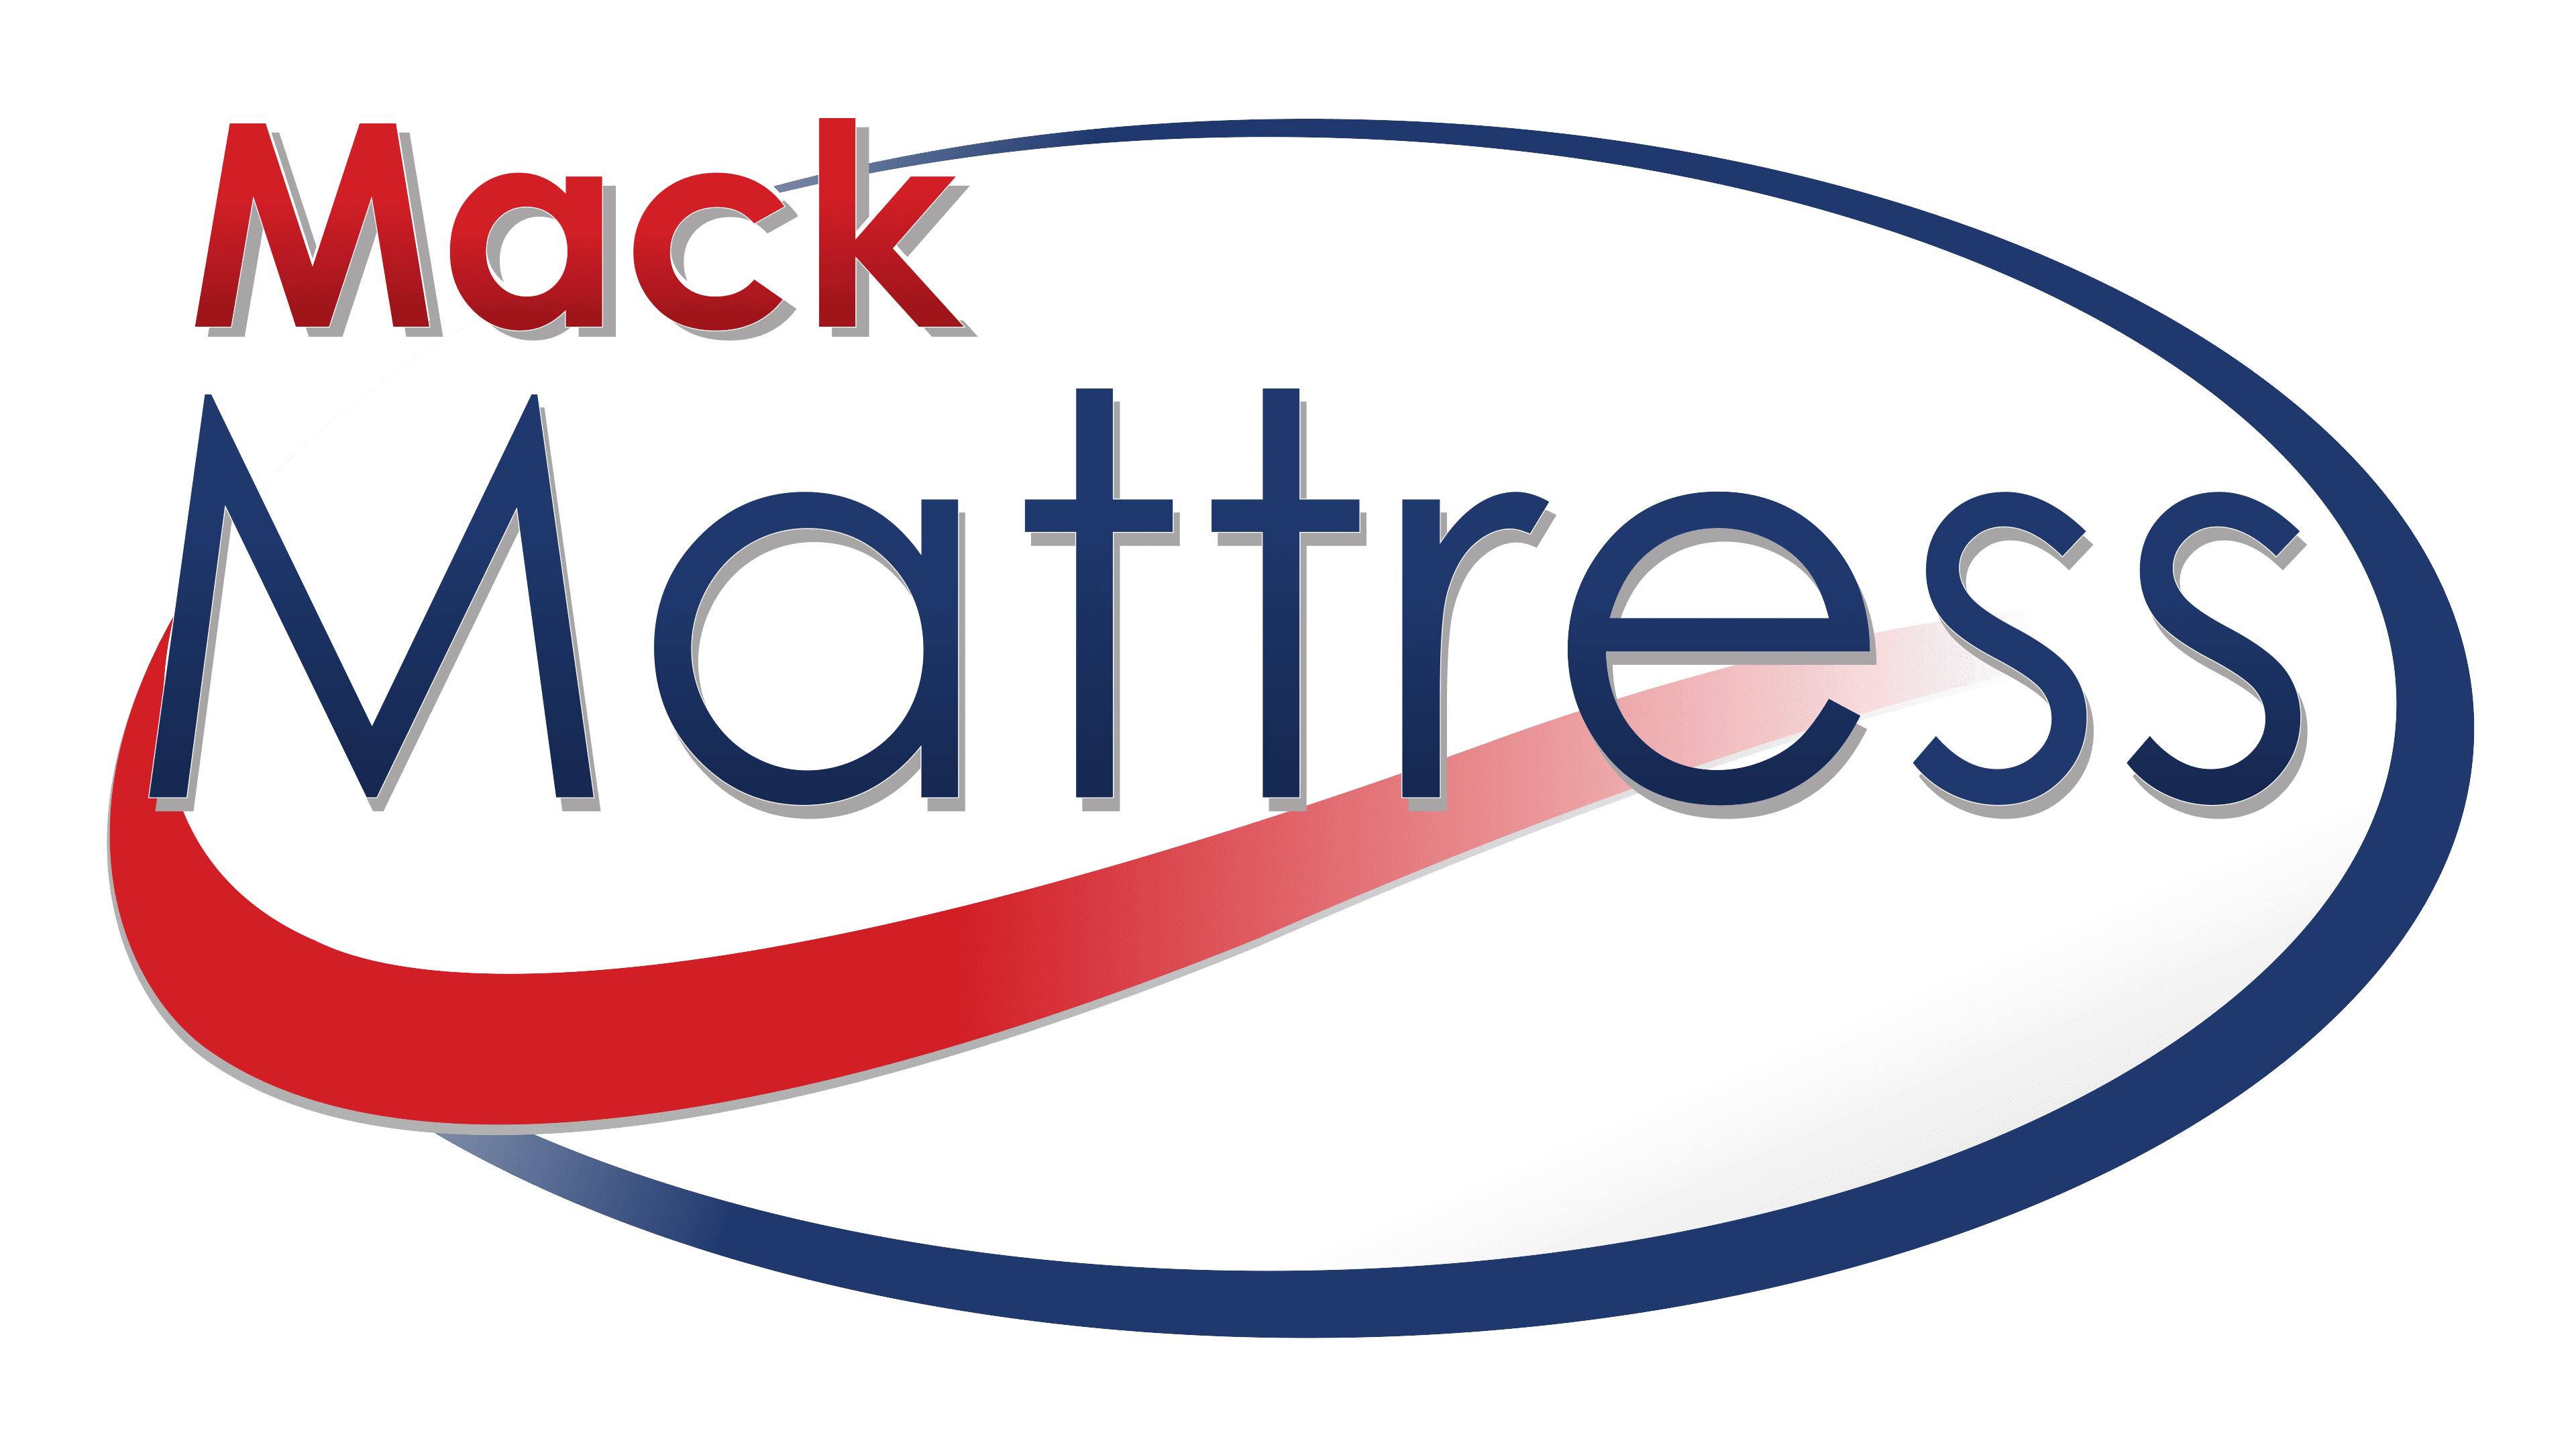 Mack Mattress - Logo